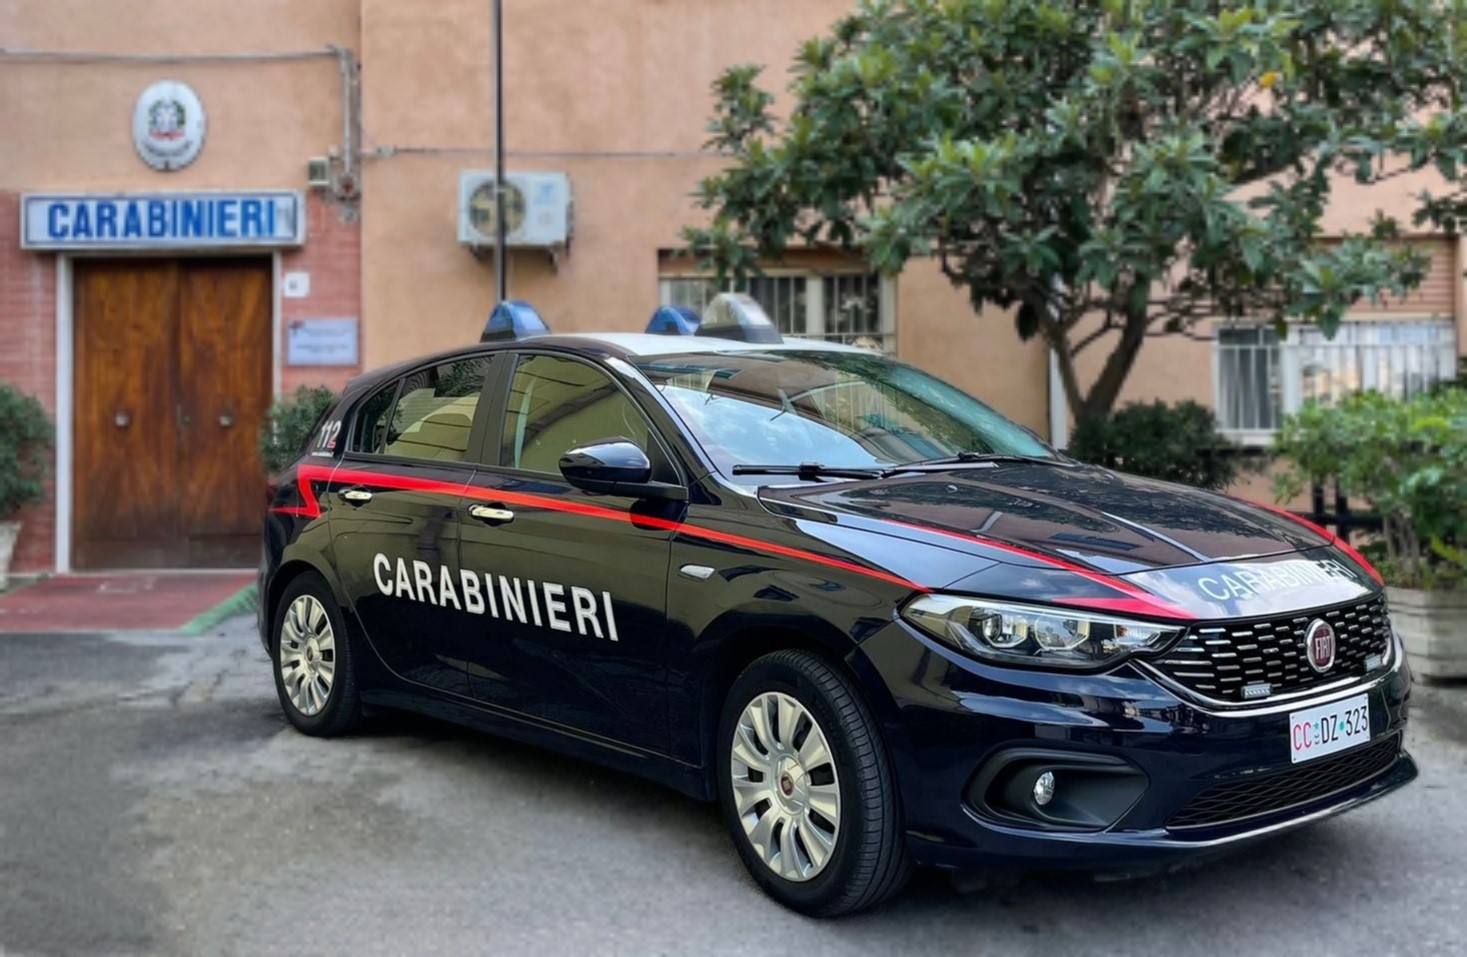 Gioiosa Marea  –  Condannato ad anni 3 e mesi 2 di reclusione per maltrattamenti in famiglia e lesioni. Arrestato dai Carabinieri.